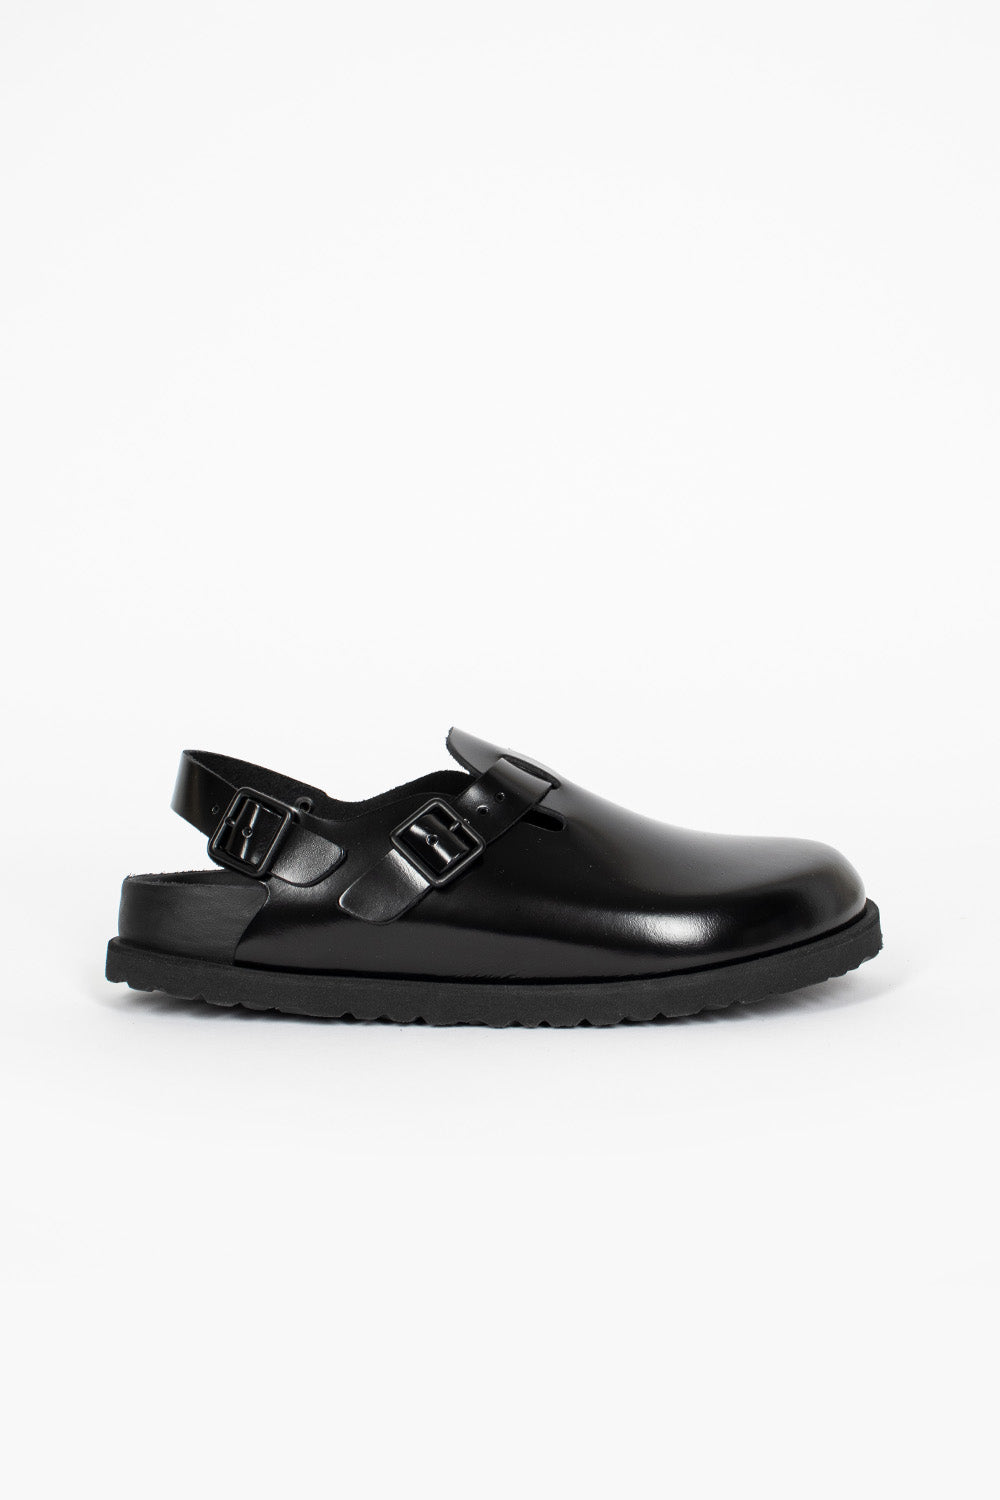 Tokio Leather Sandal Black